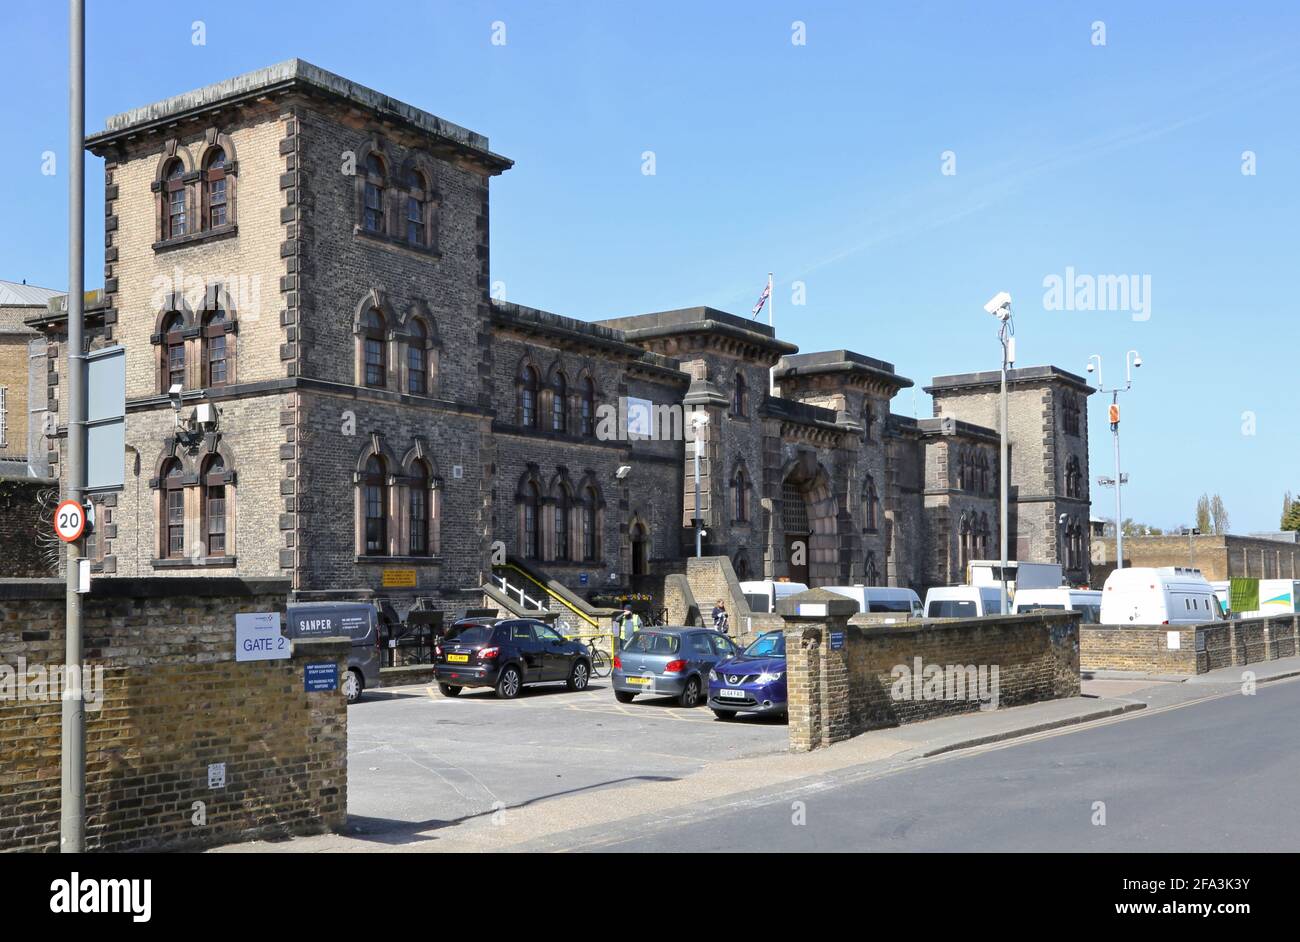 Wandsworth Prison, London, Großbritannien. Das viktorianische Gefängnis Catagory B beherbergt 1500 männliche Gefangene in einer wohlhabenden Gegend im Südwesten Londons. Stockfoto